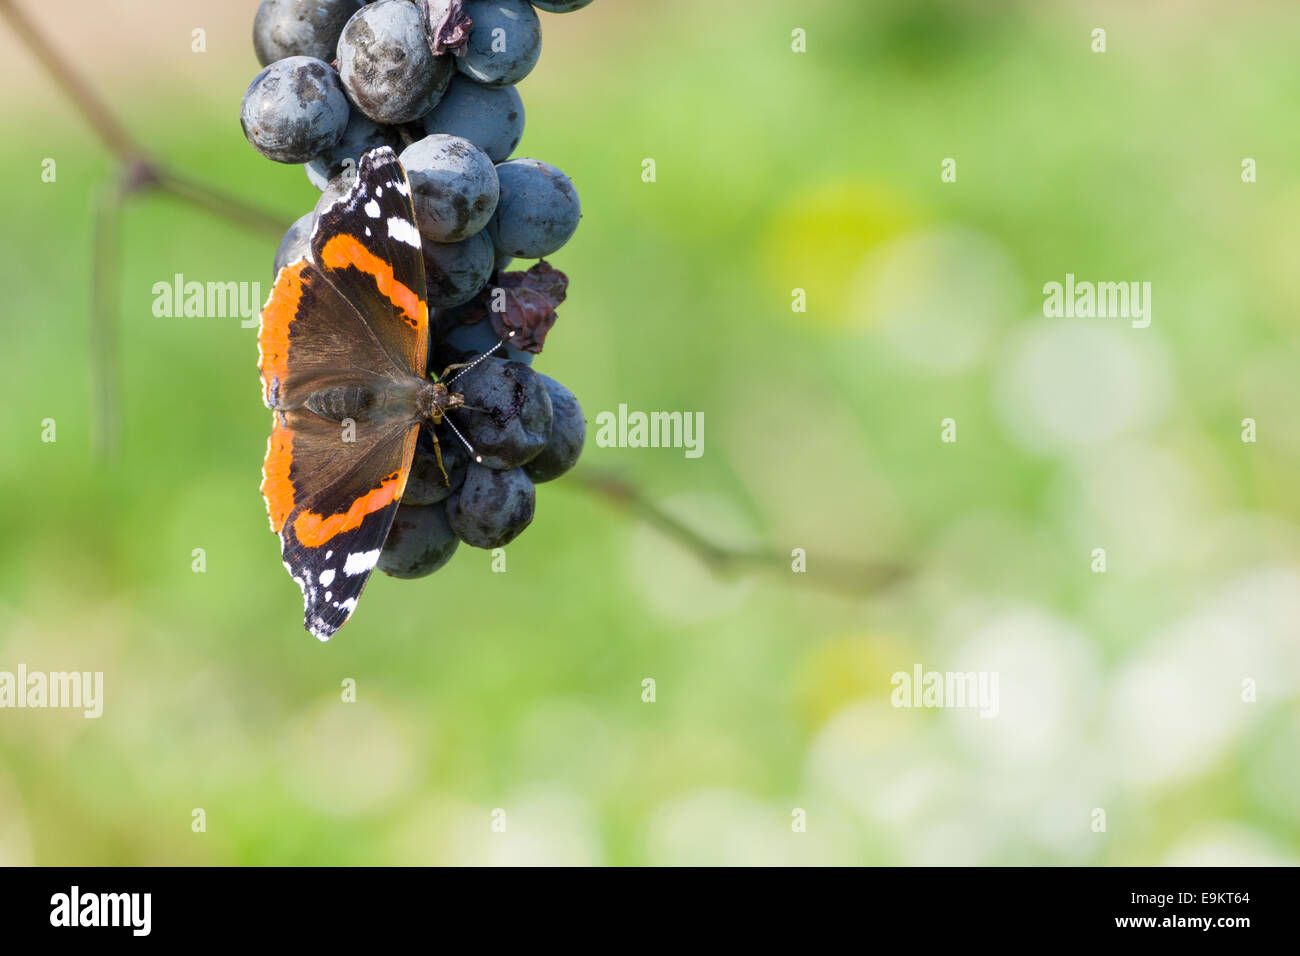 Roter Admiral Schmetterling Essen Blaue Trauben Mit Unscharfen Hintergrund Stockfotografie Alamy